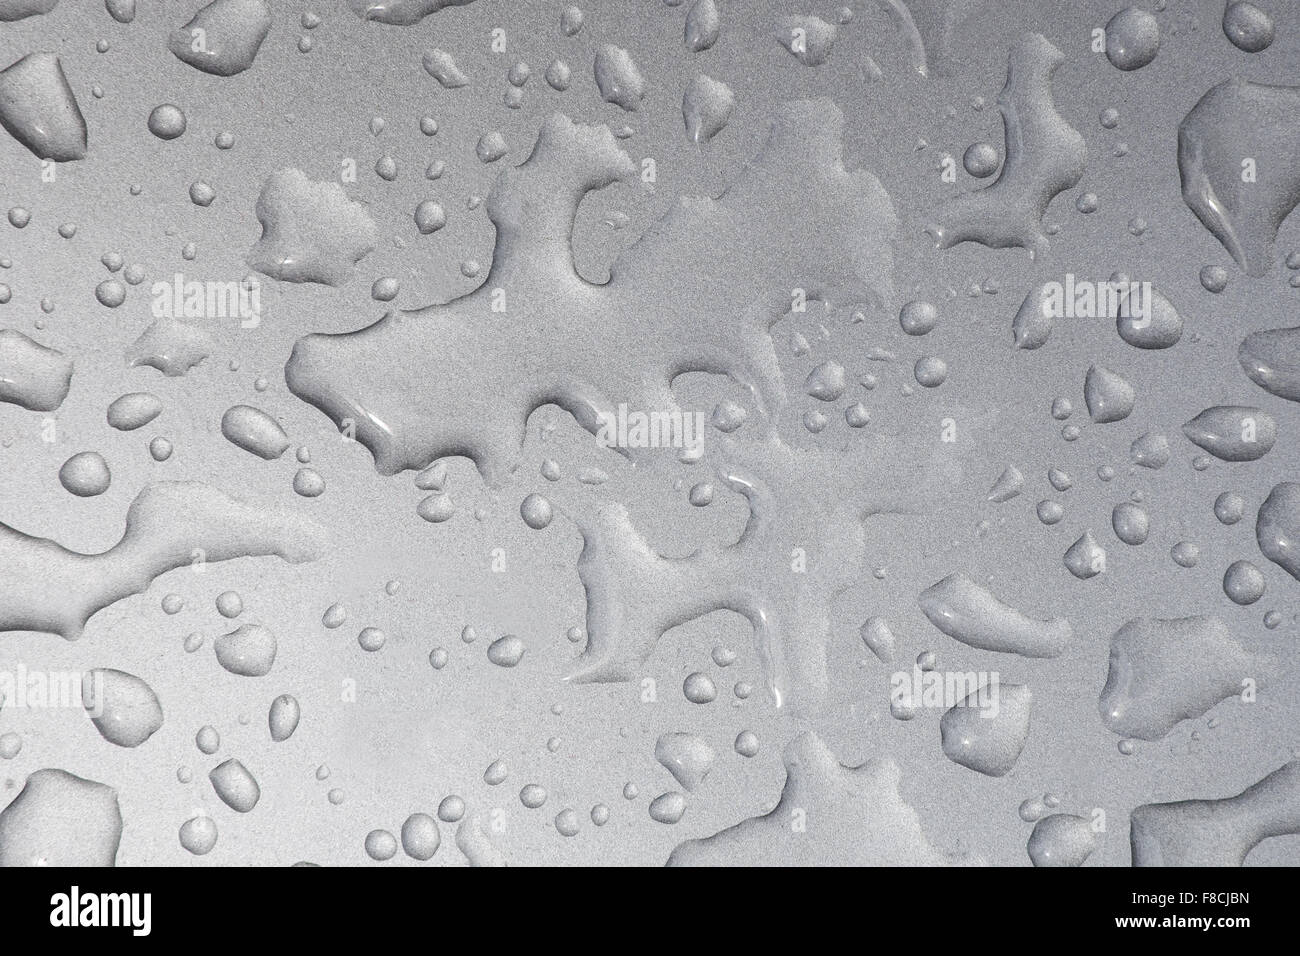 Schließen Sie herauf Bild der Wassertropfen auf metallischen Oberfläche Stockfoto